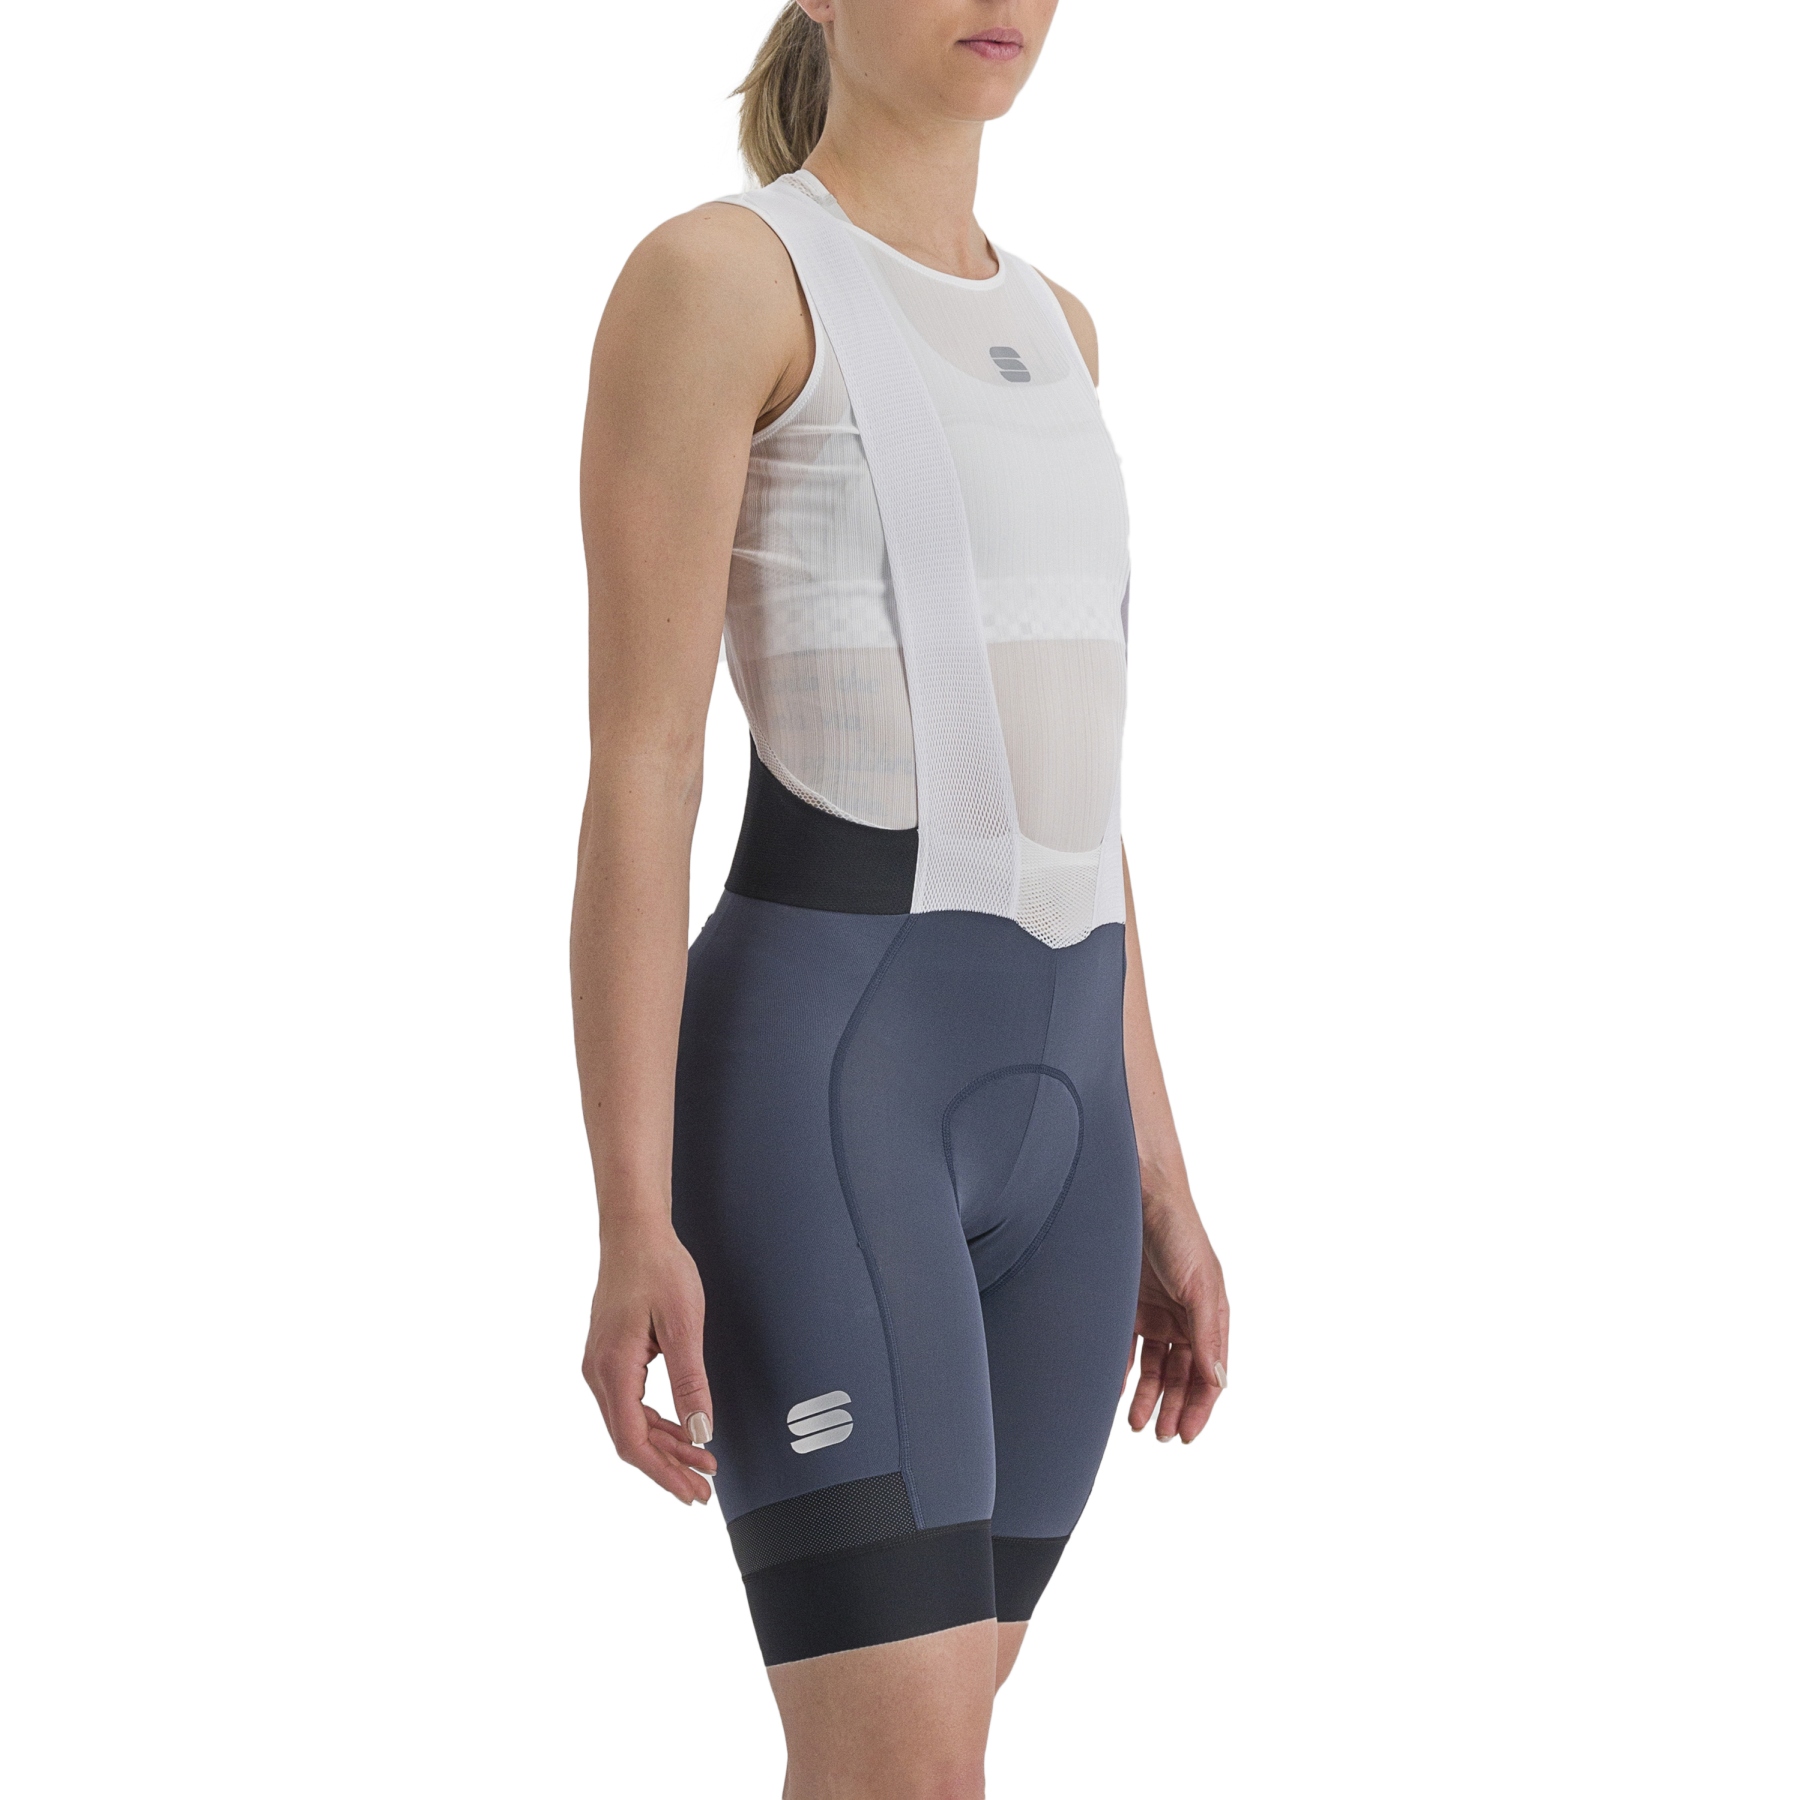 Produktbild von Sportful Supergiara Damen-Fahrradhose mit Trägern - 456 Galaxy Blue